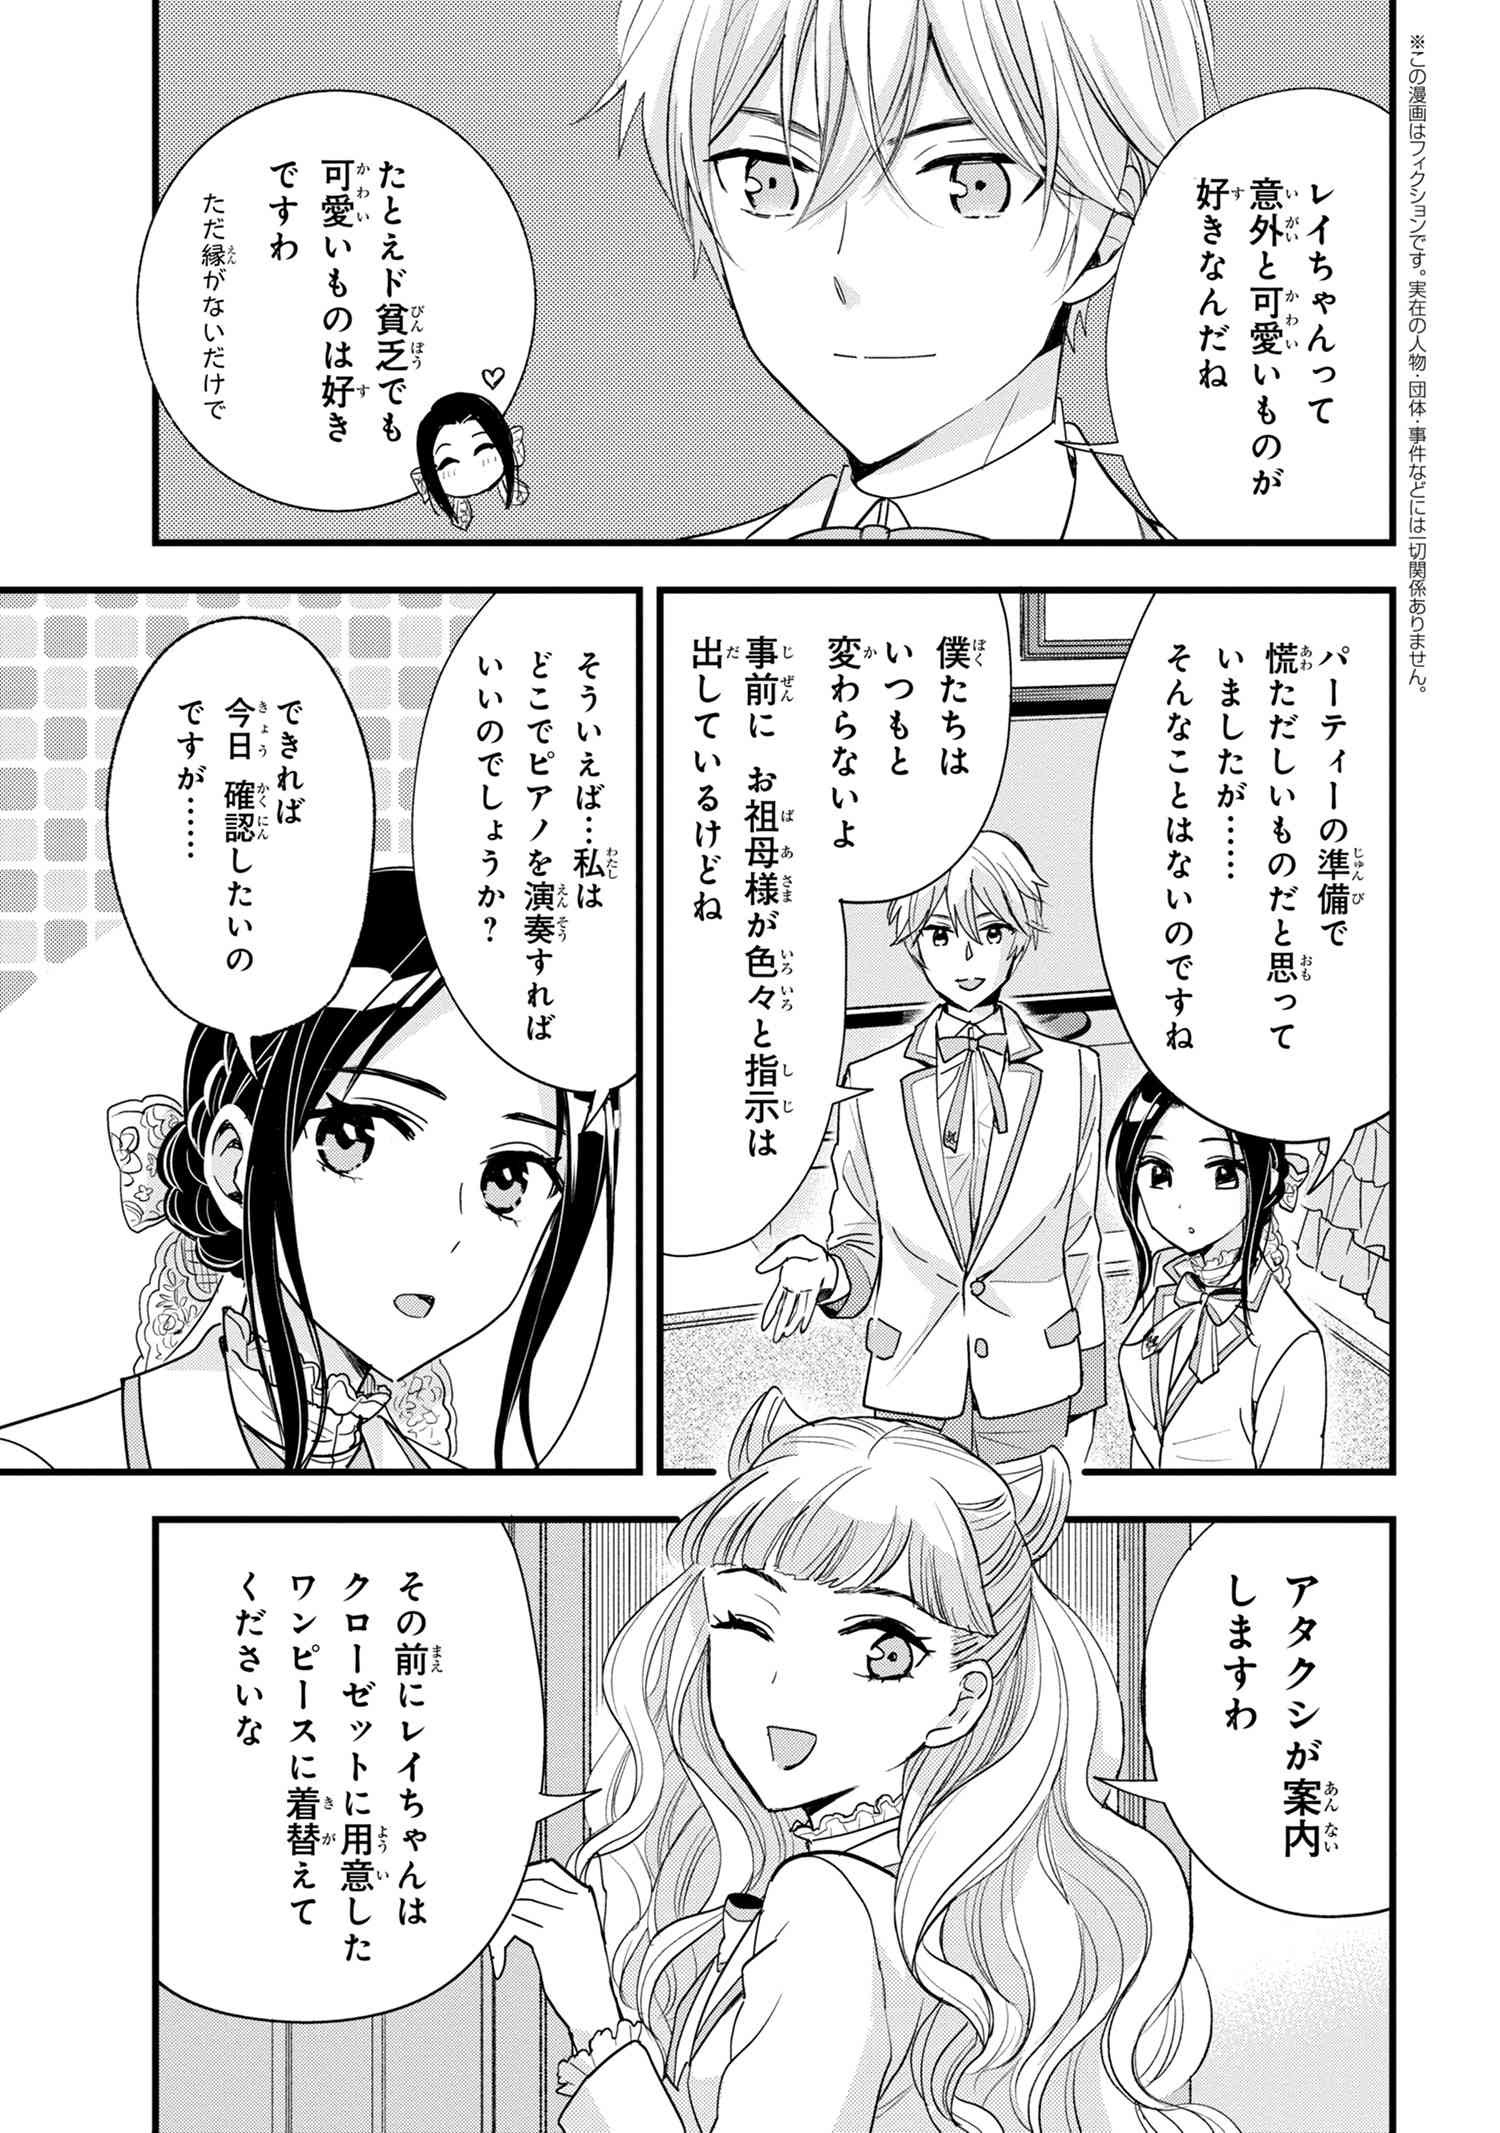 Reiko no Fuugi Akuyaku Reijou to Yobarete imasu ga, tada no Binbou Musume desu - Chapter 13-4 - Page 2